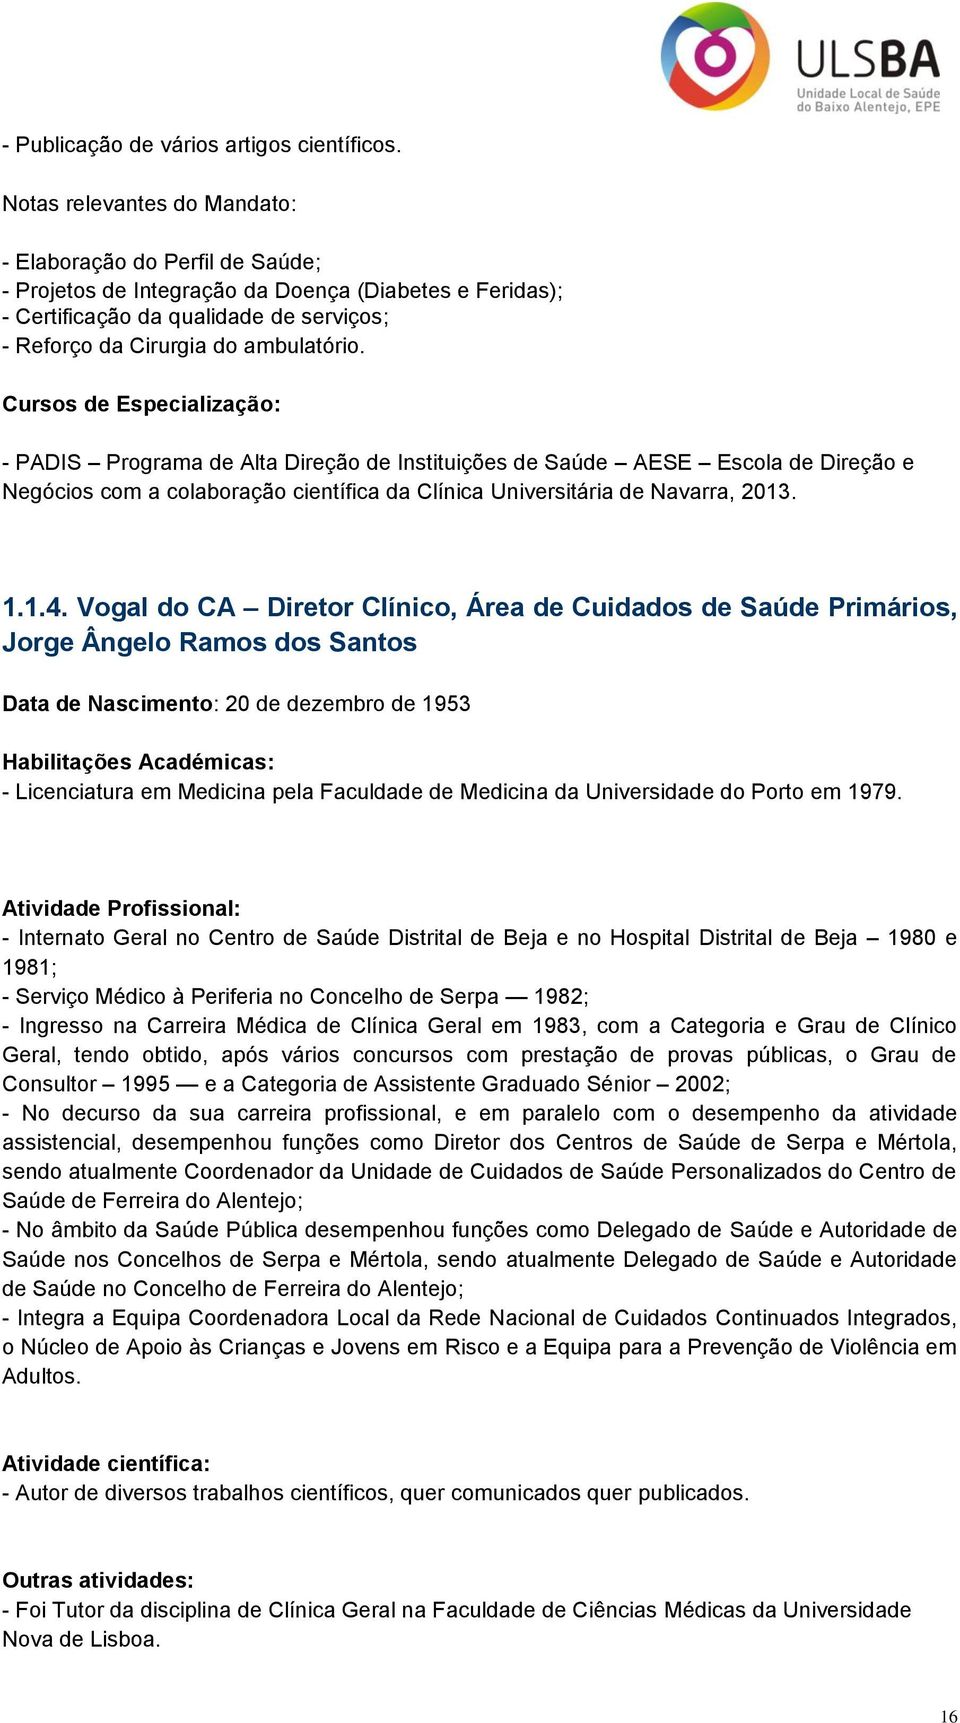 Cursos de Especialização: - PADIS Programa de Alta Direção de Instituições de Saúde AESE Escola de Direção e Negócios com a colaboração científica da Clínica Universitária de Navarra, 2013. 1.1.4.